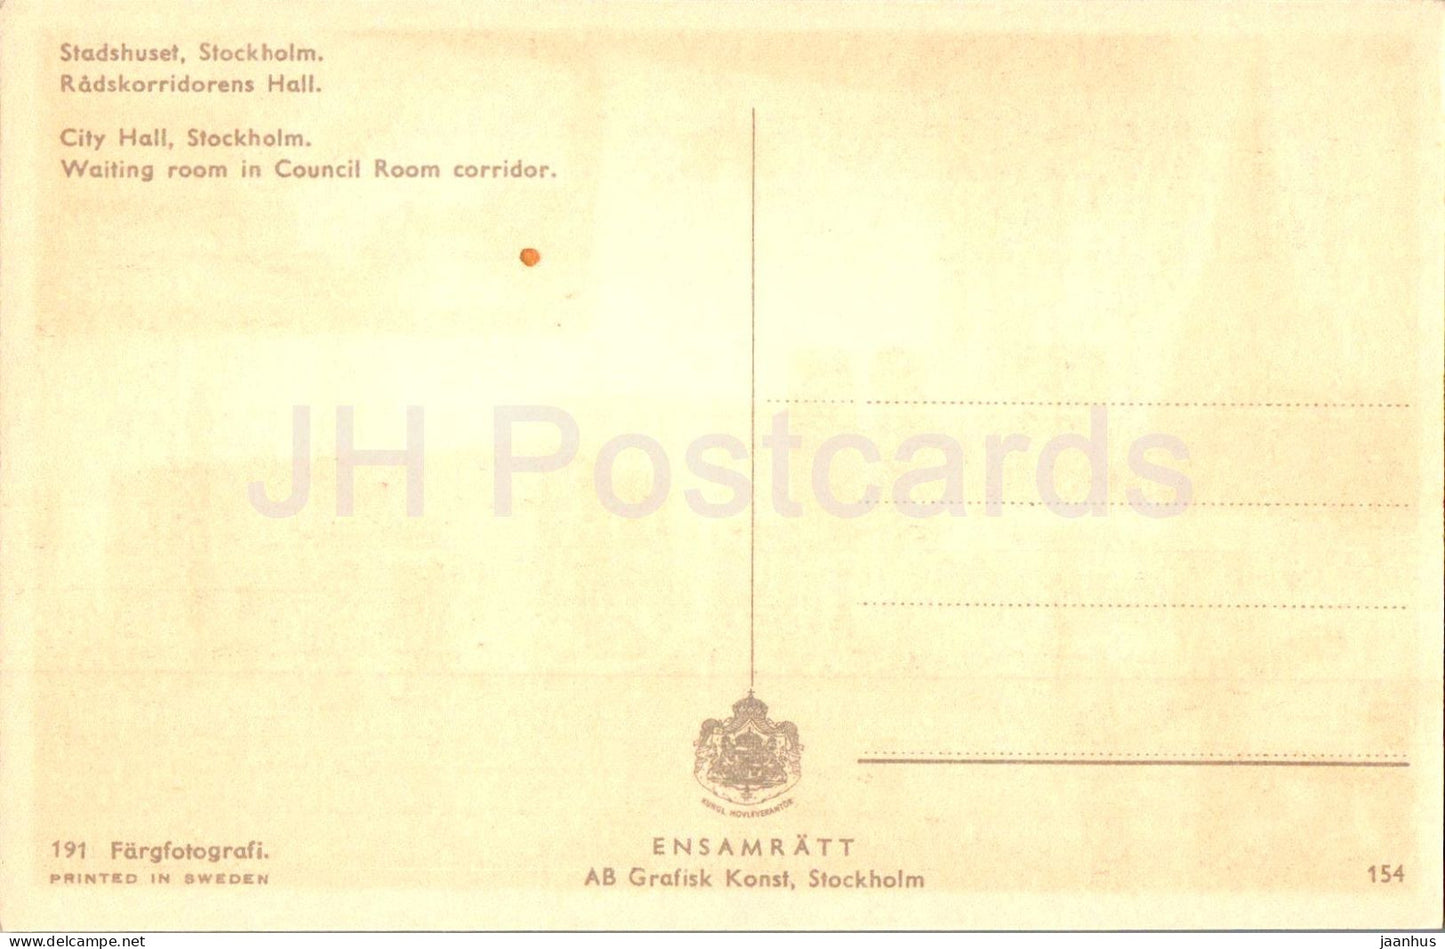 Stockholm - Stadshuset - Radskorridorens Hall - salle d'attente - 154 - carte postale ancienne - Suède - inutilisée 